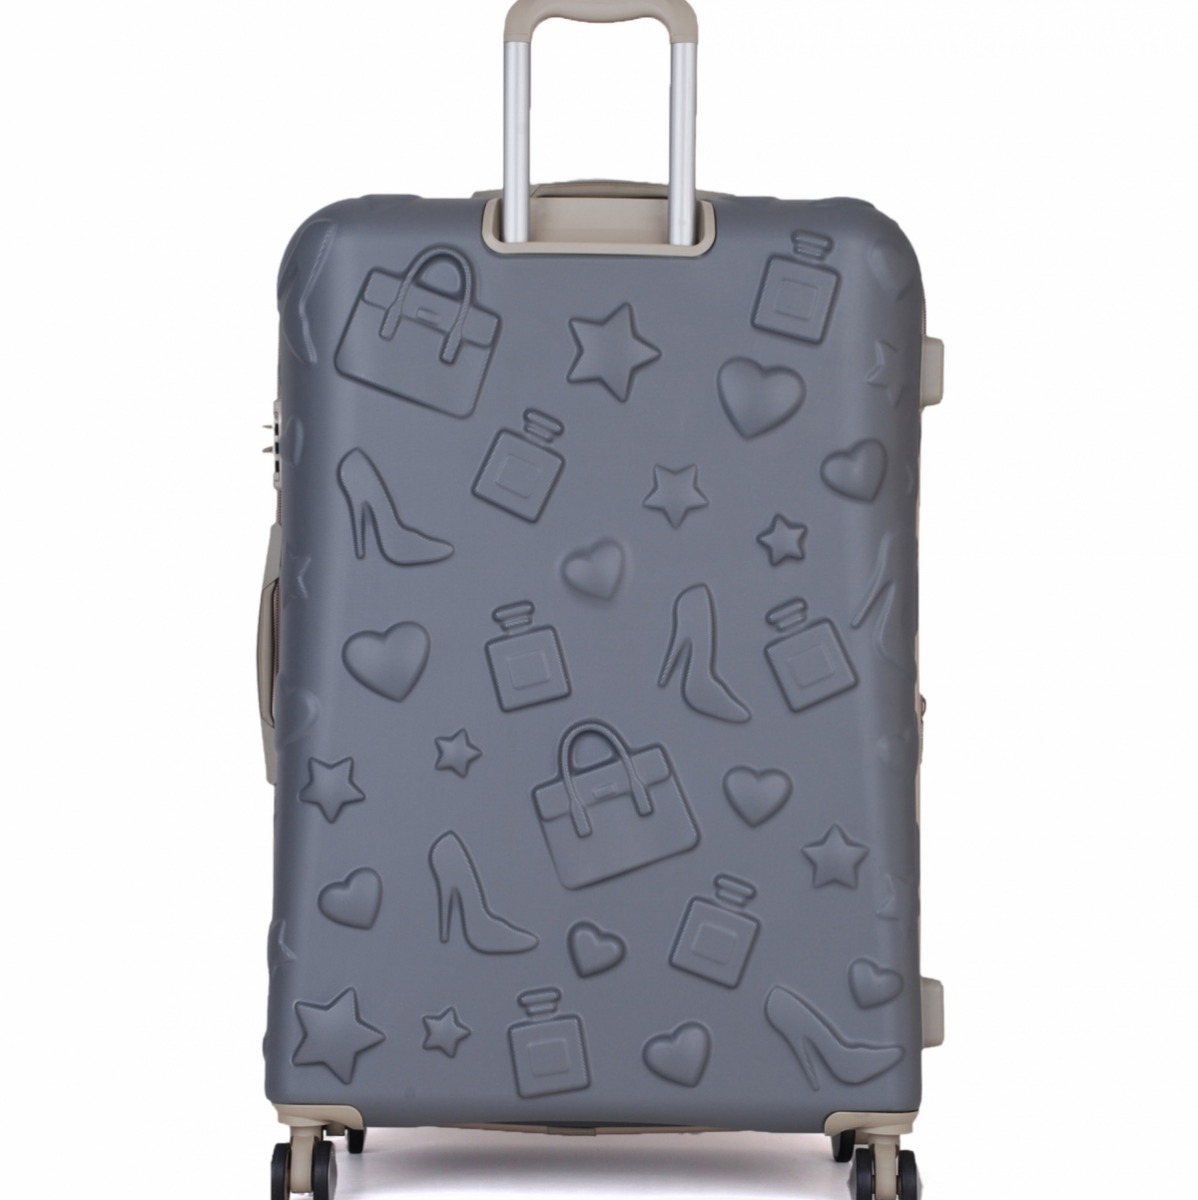 Flo Unisex IT Luggage Girl Essentials Büyük Boy Valiz 16-2240-08. 5